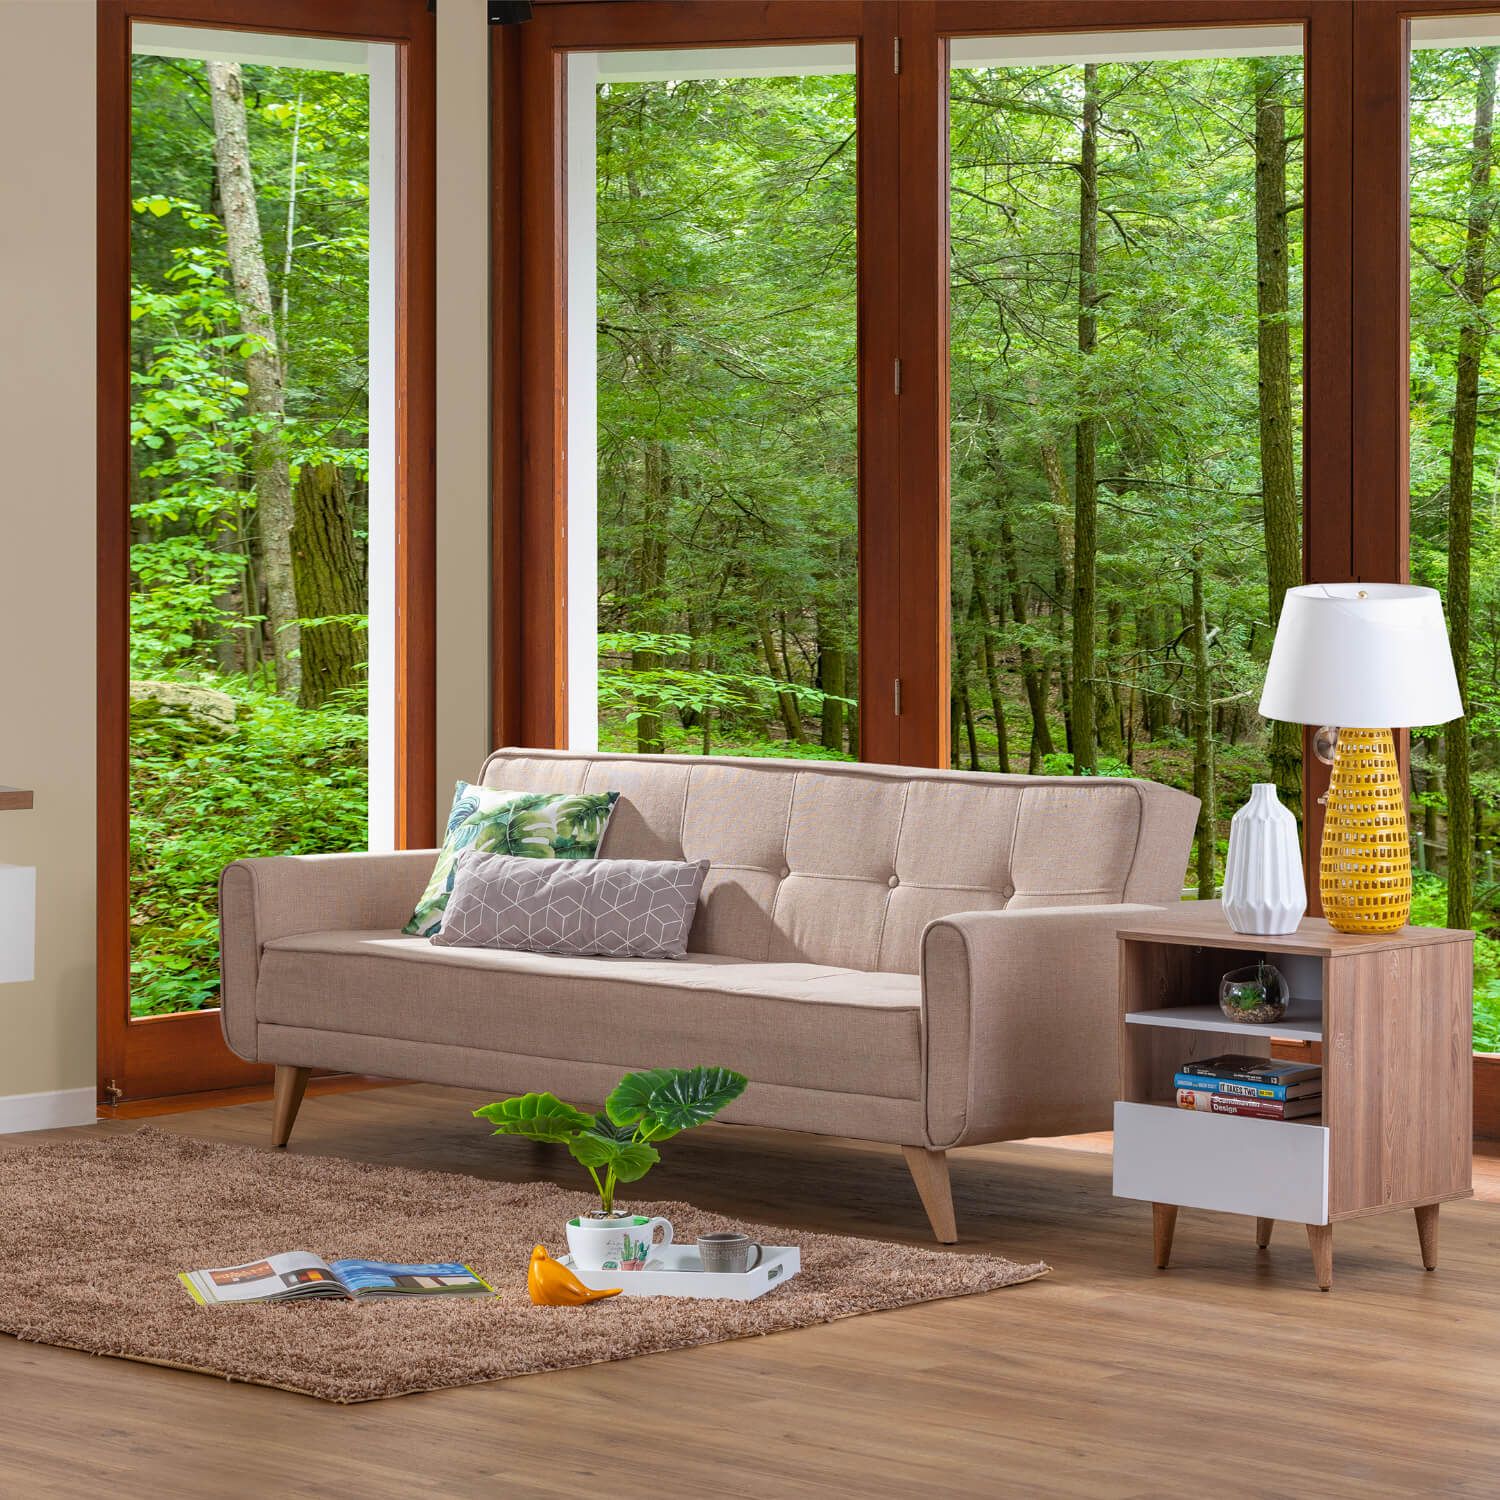 Mueble para TV Haus madera